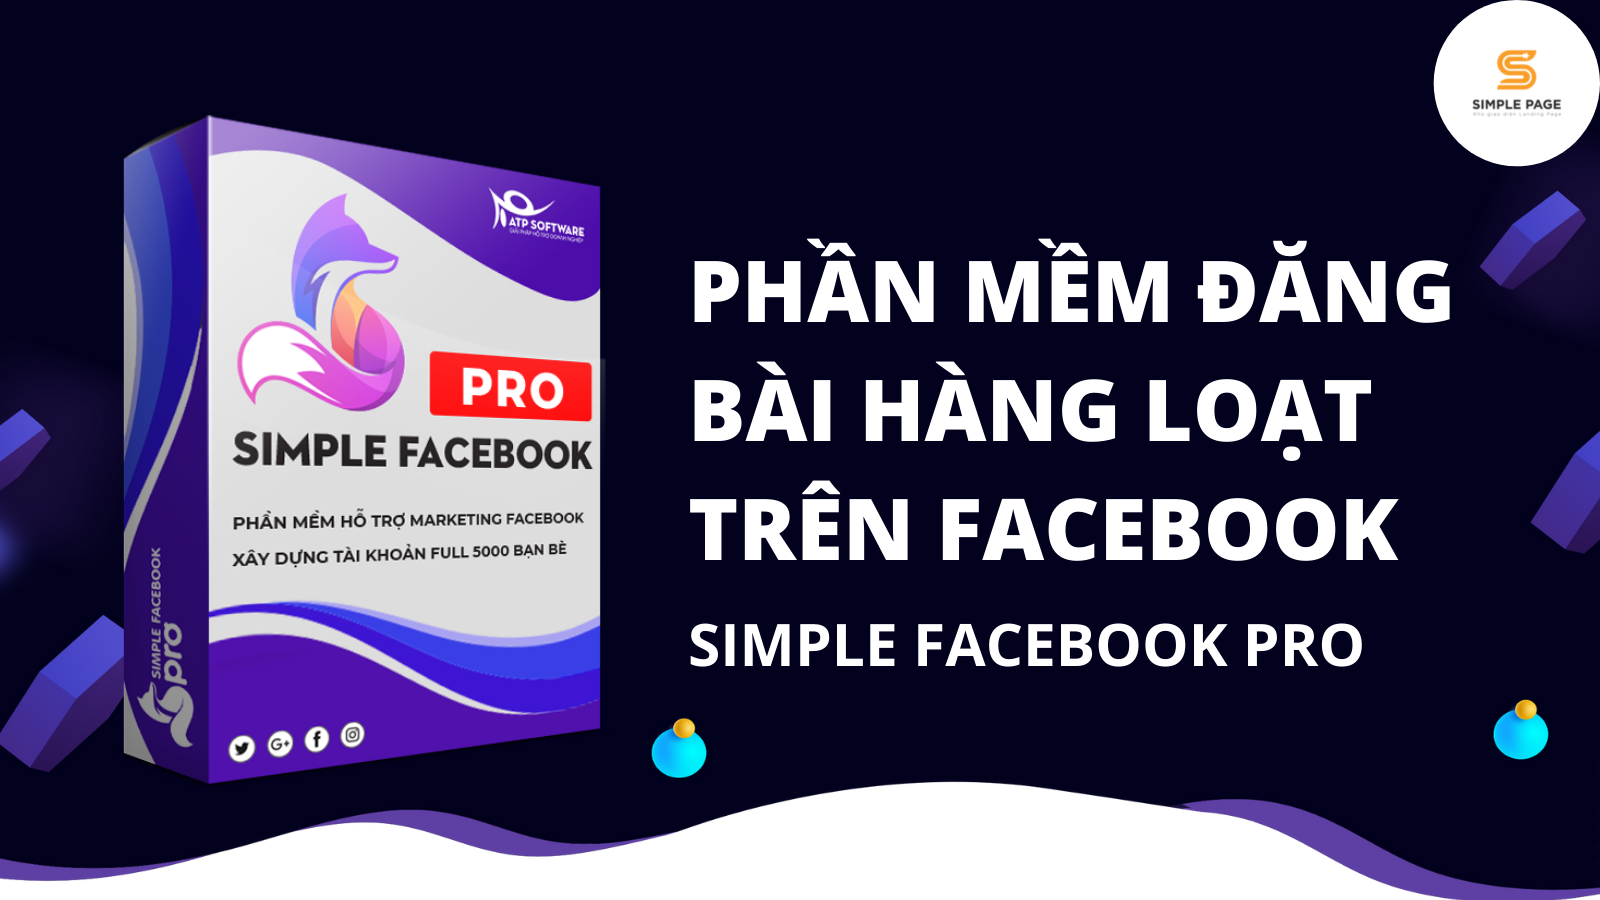 Phan-mem-dang-bai-hang-loat-tren-Facebook